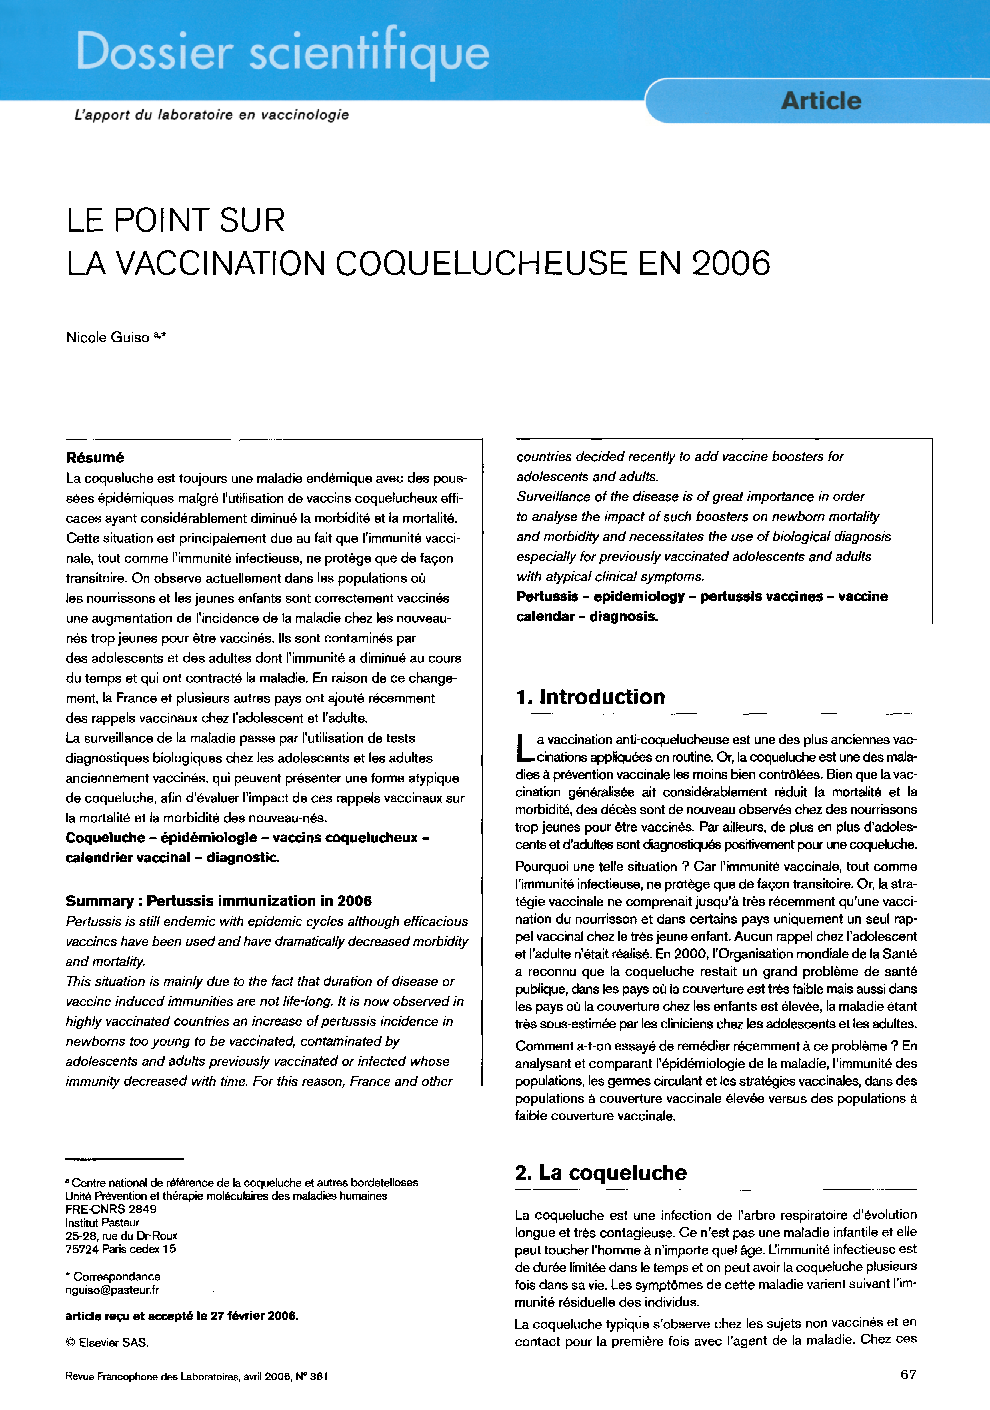 Le point sur la vaccination coquelucheuse en 2006